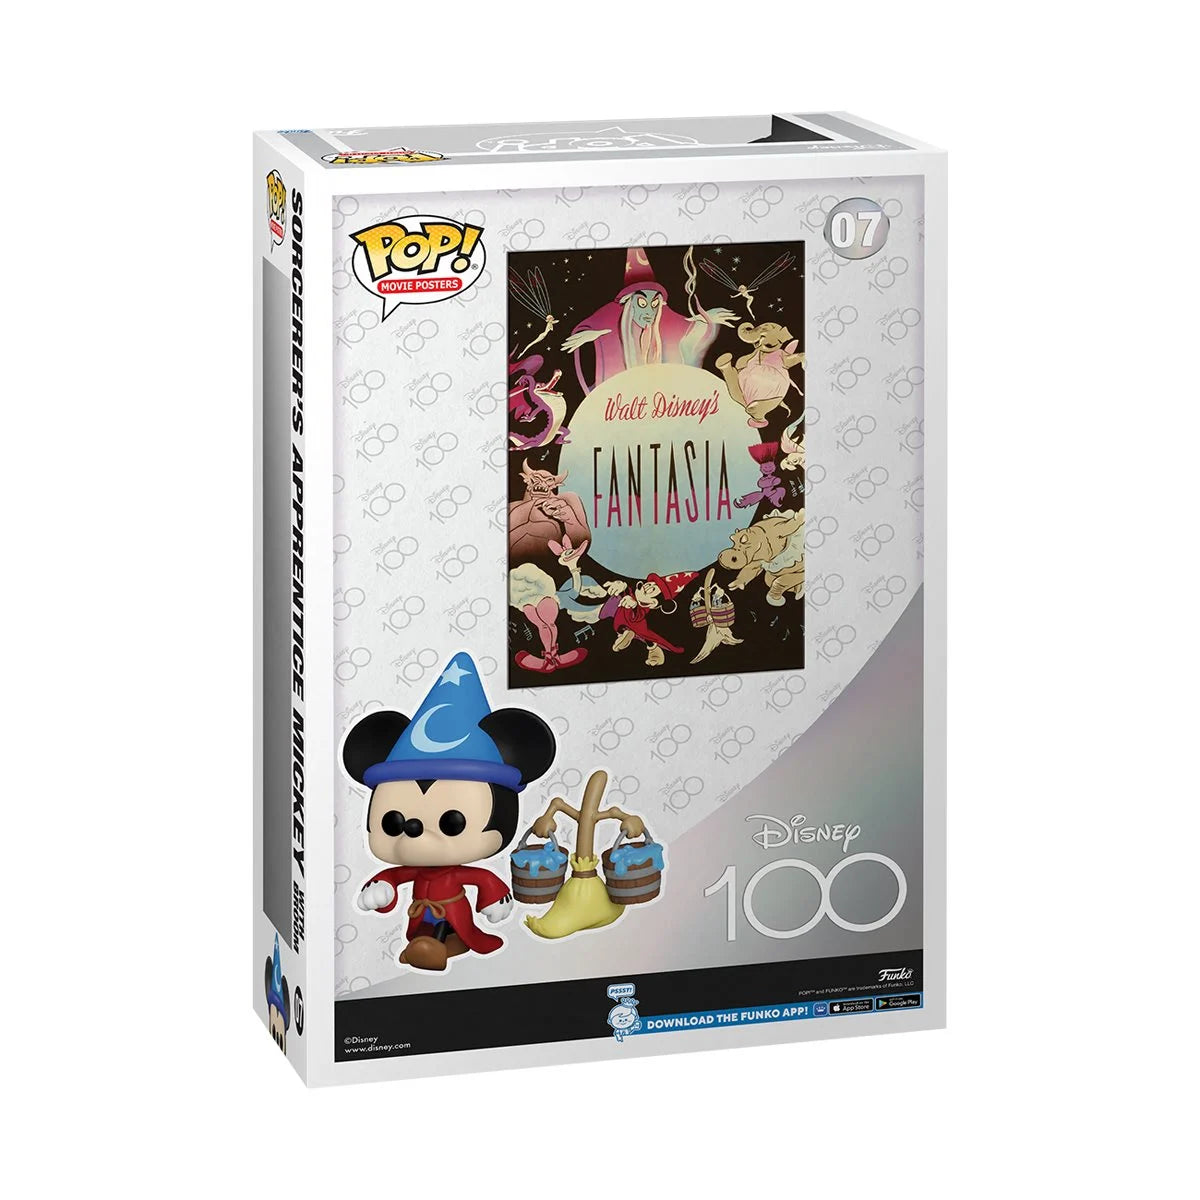 Sorcerer's Apprentice Mickey Fantasia Movie Poster Funko Pop! Disney 100